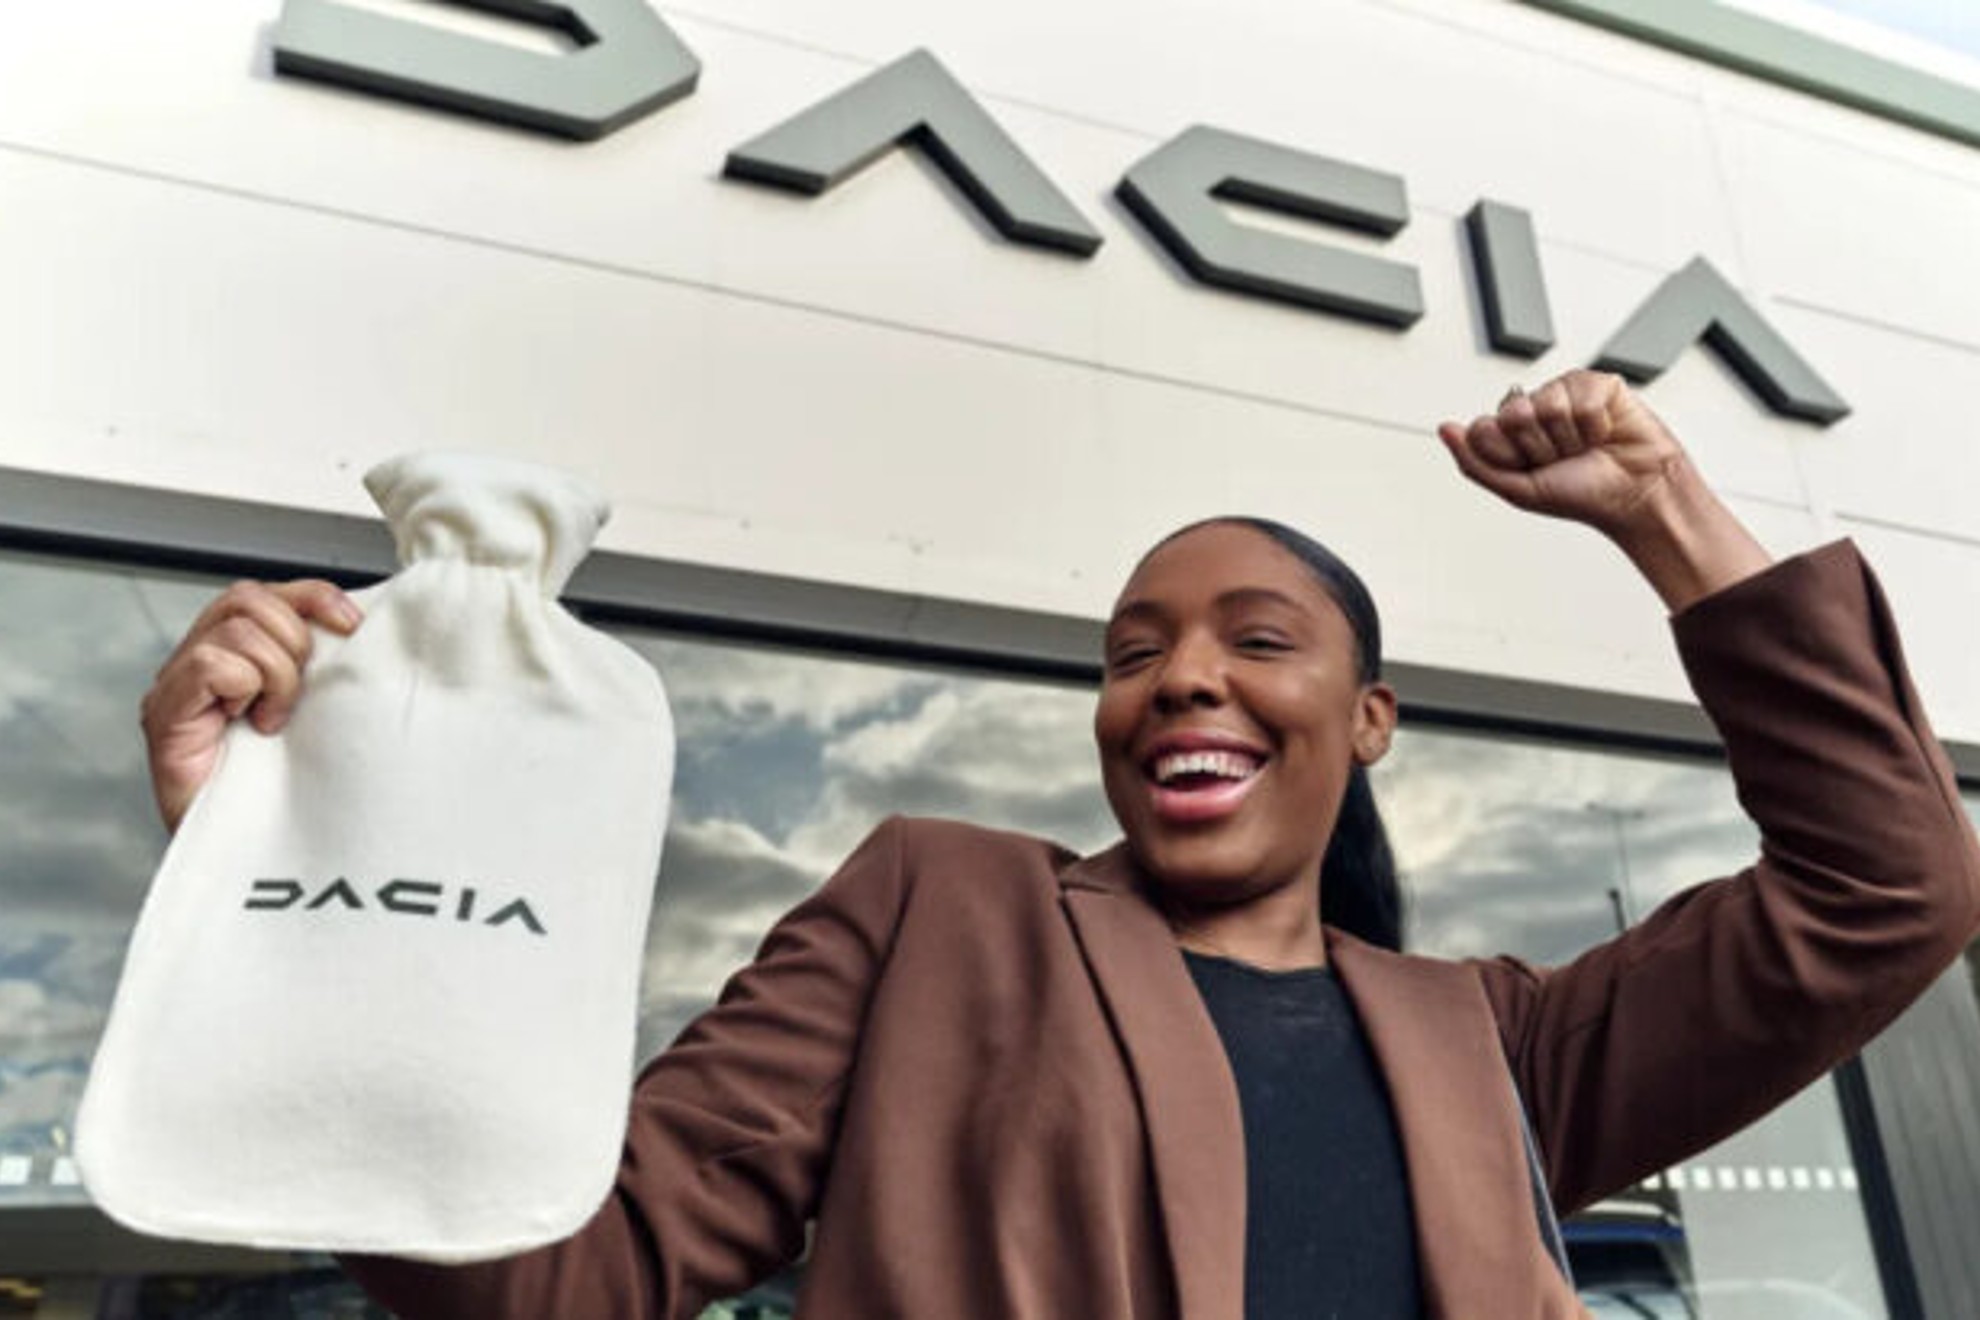 Dacia ha puesto en marcha una irónica campaña de marketing en Reino Unido.